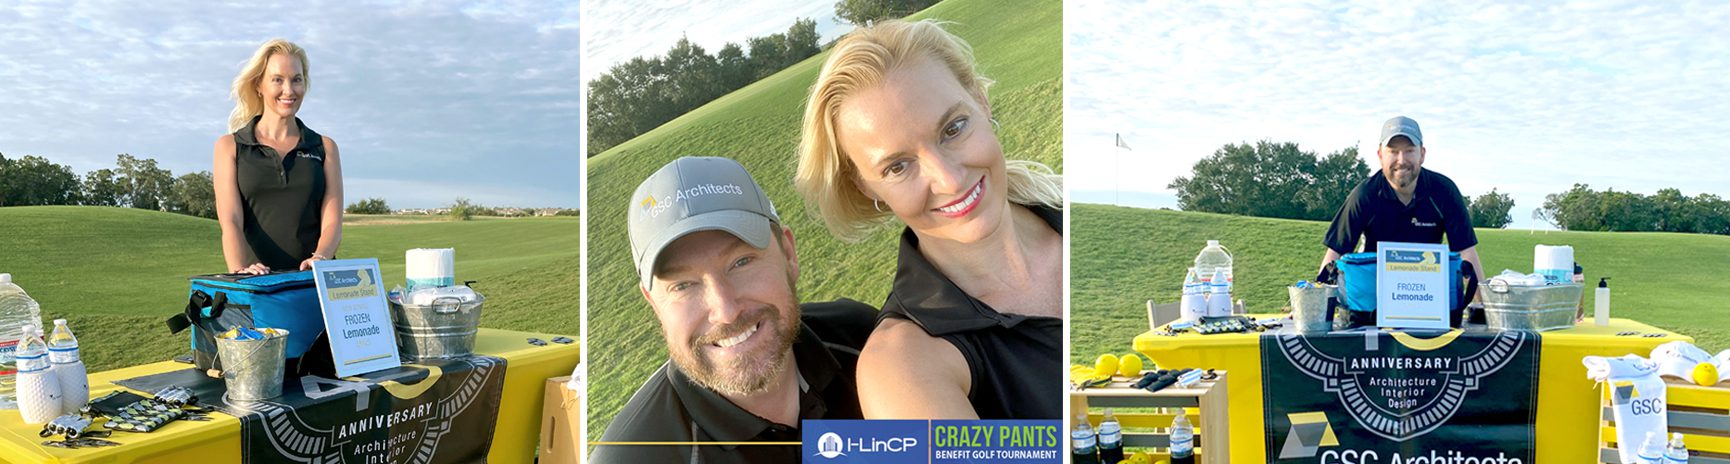 I-LinCP Crazy Pants Golf Tournament